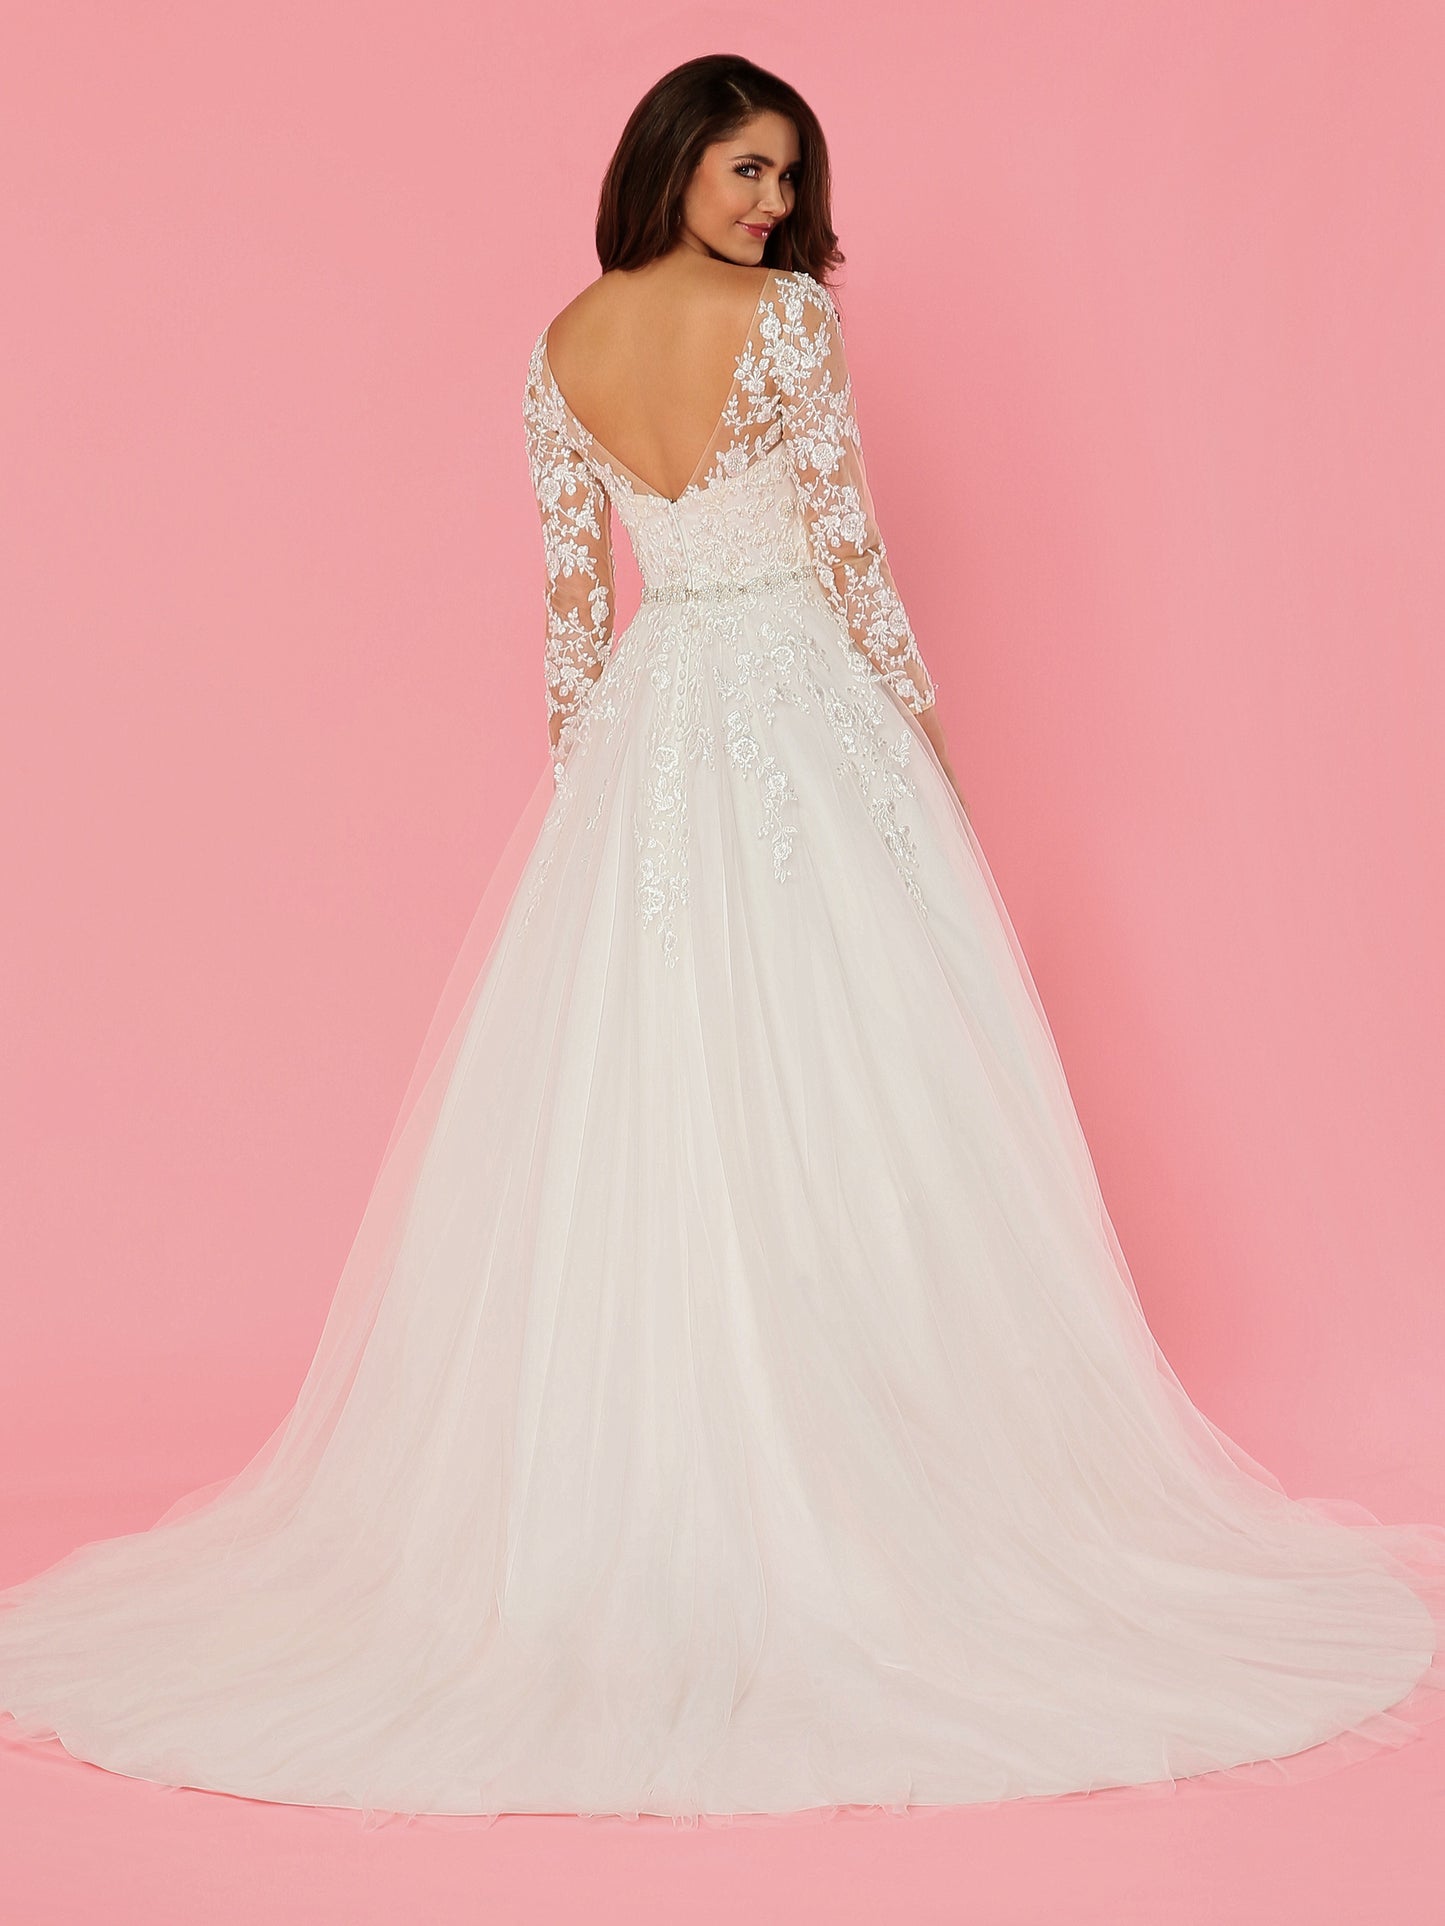 Davinci Bridal 50470 Embellished Lace Tulle Ballgown Wedding Dress Sheer Sleeve Neckline